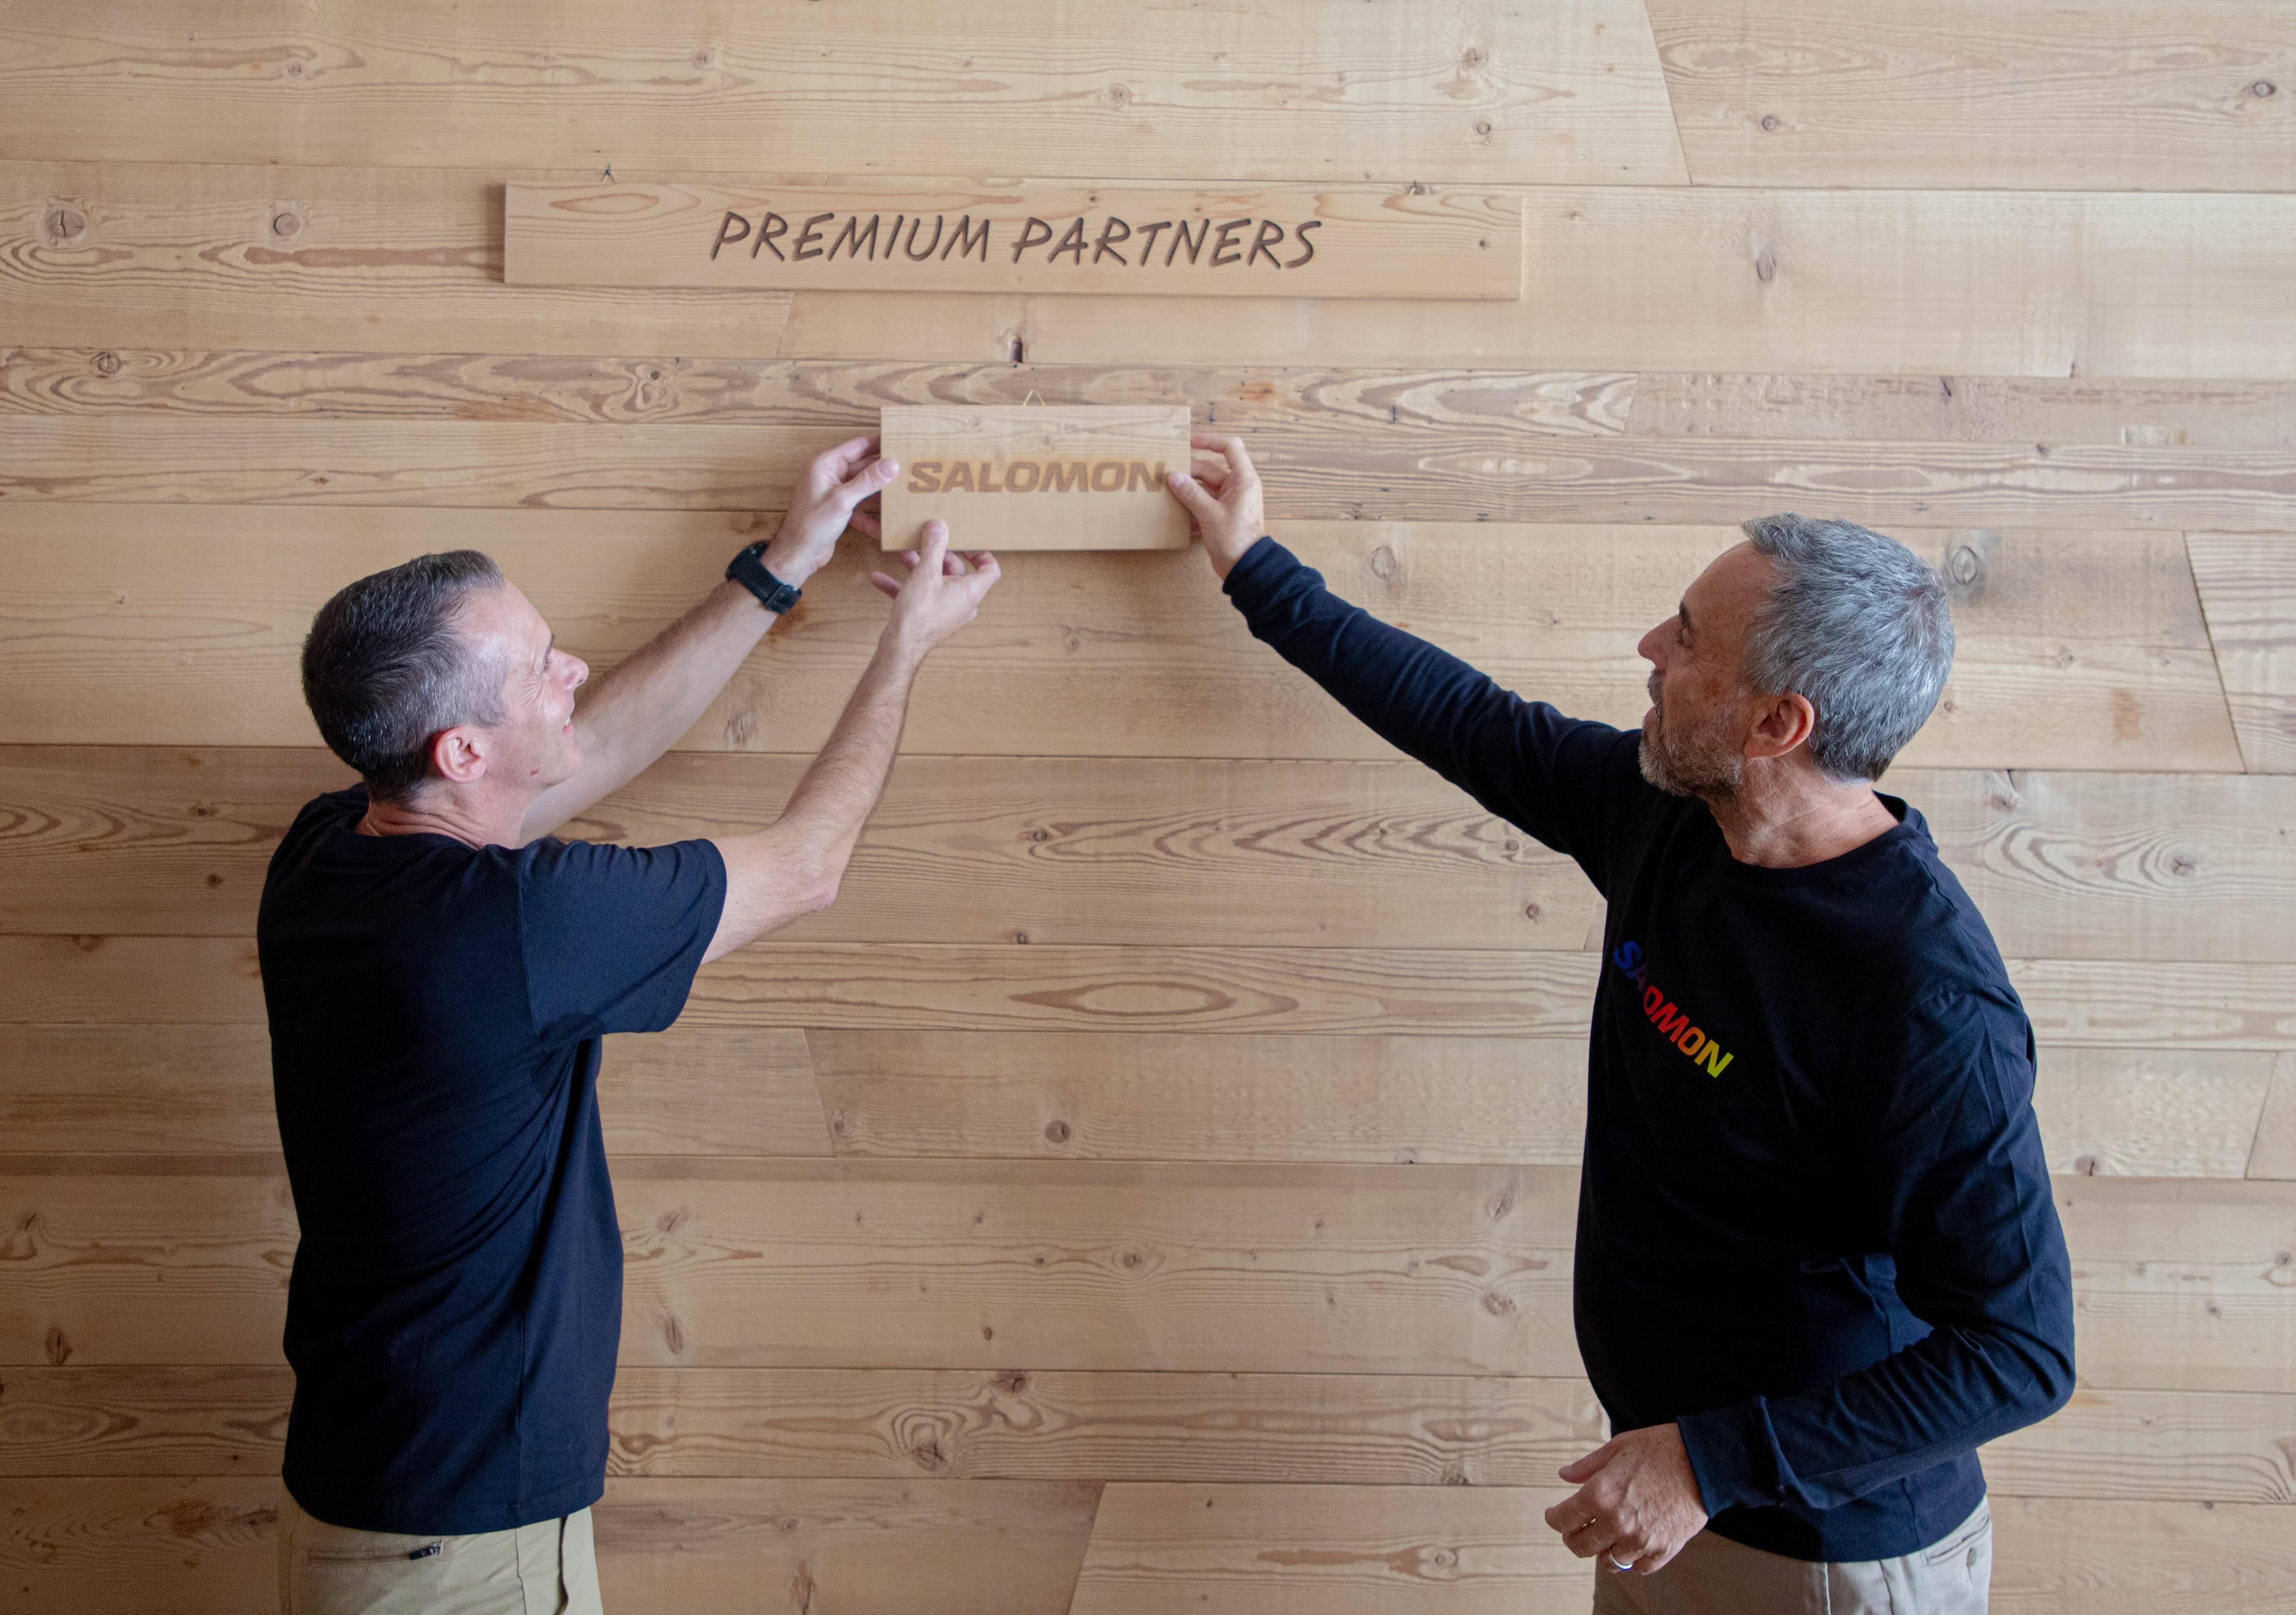 Foto di Varnier e Franco Fogliato mentre applicano la targhetta  'Salomon' nel muro delle partnership